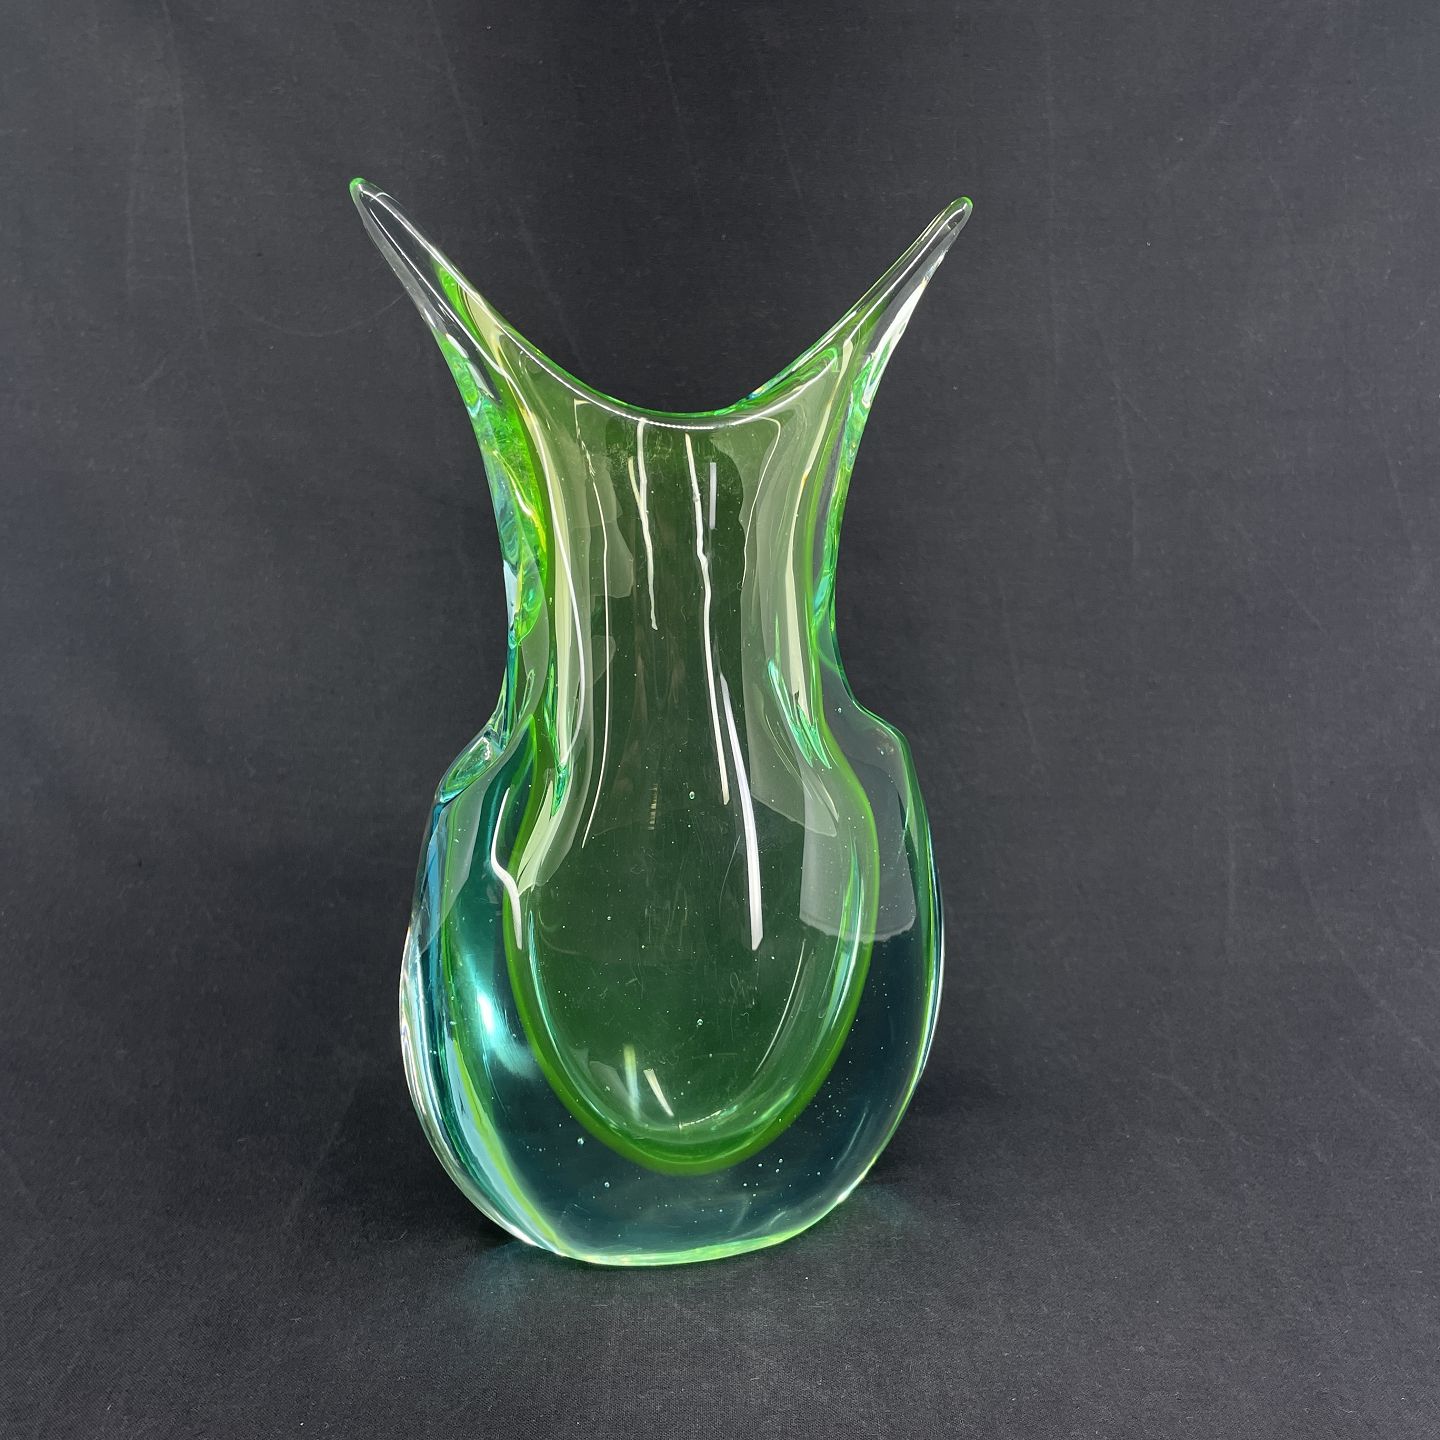 ægtemand Barry Forbandet Harsted Antik - Fin lysegrøn sommerso vase fra 1960'erne